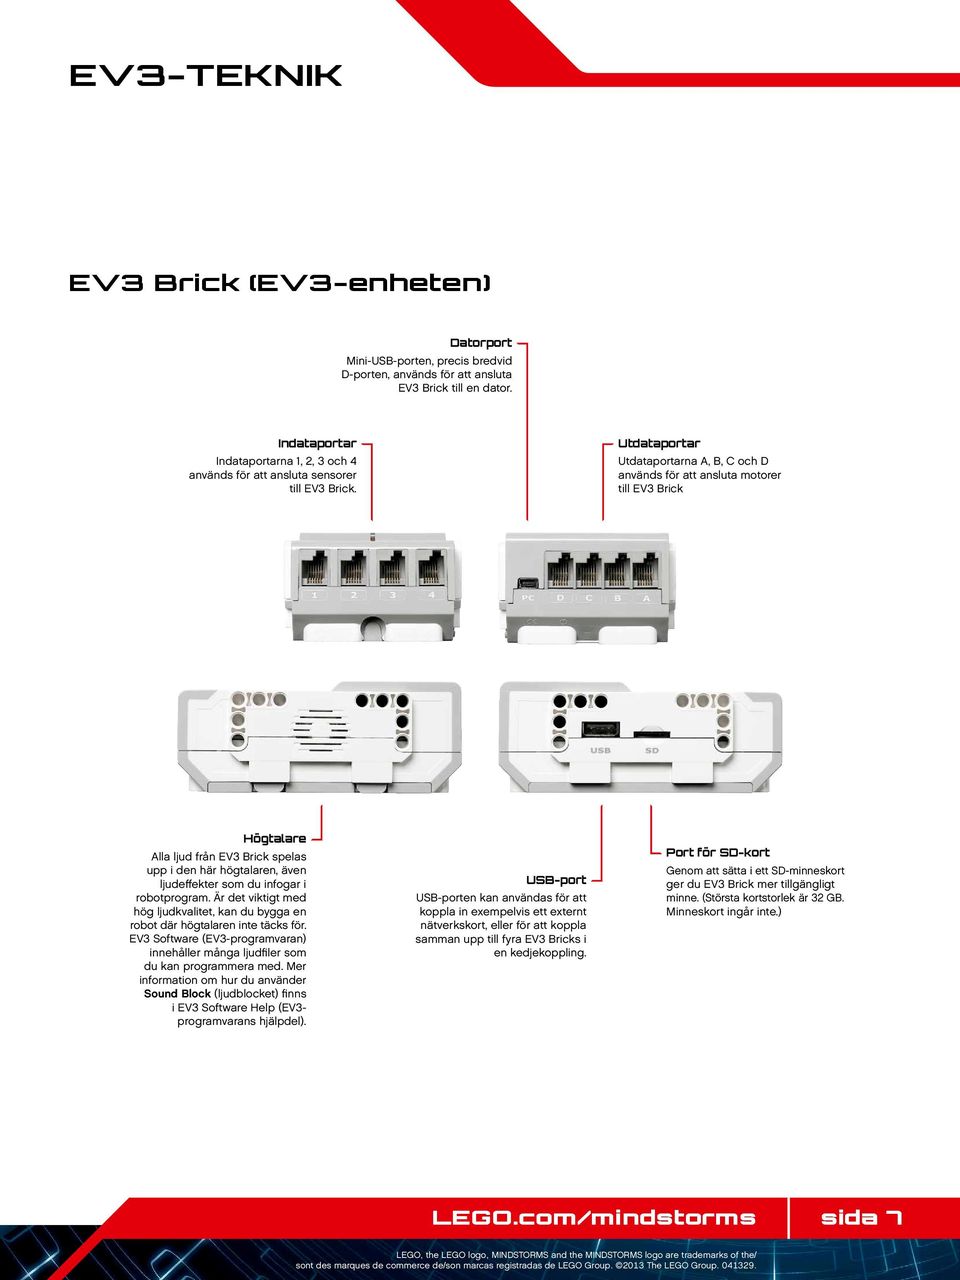 Utdataportar Utdataportarna A, B, C och D används för att ansluta motorer till EV3 Brick Högtalare Alla ljud från EV3 Brick spelas upp i den här högtalaren, även ljudeffekter som du infogar i